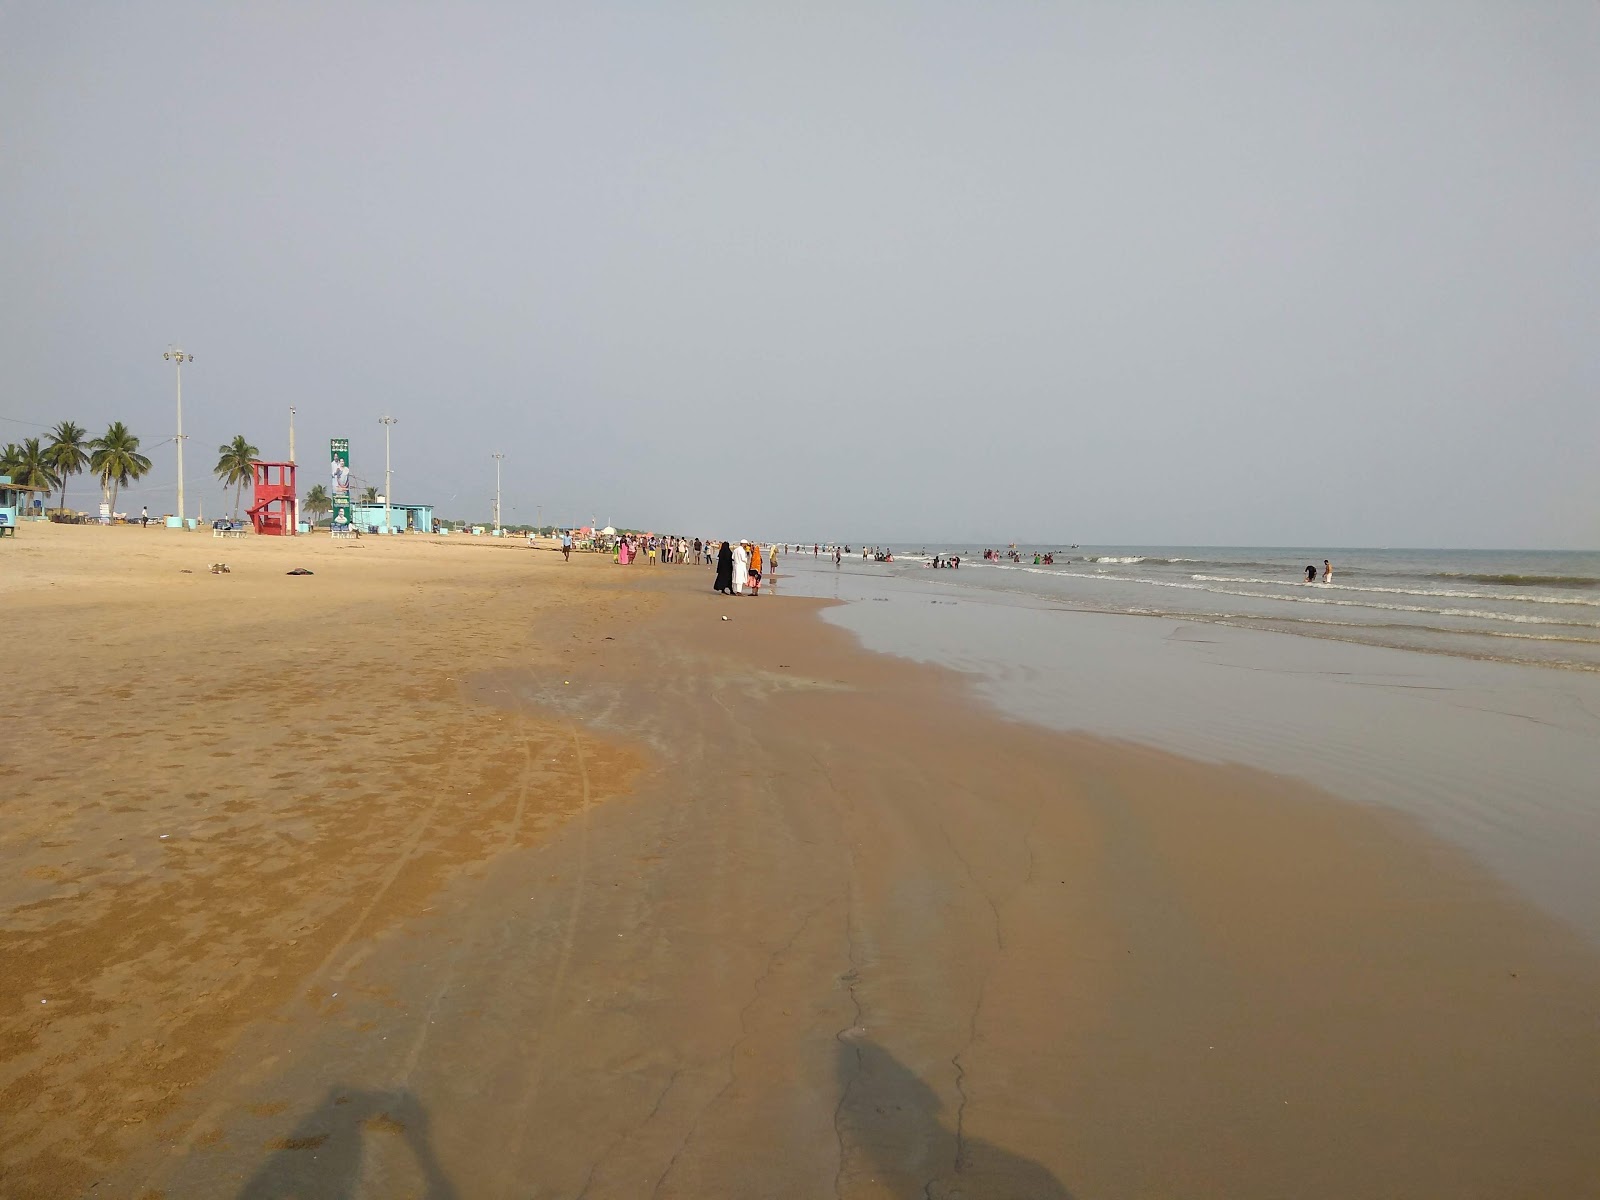 Fotografie cu Suryalanka Beach zonele de facilități